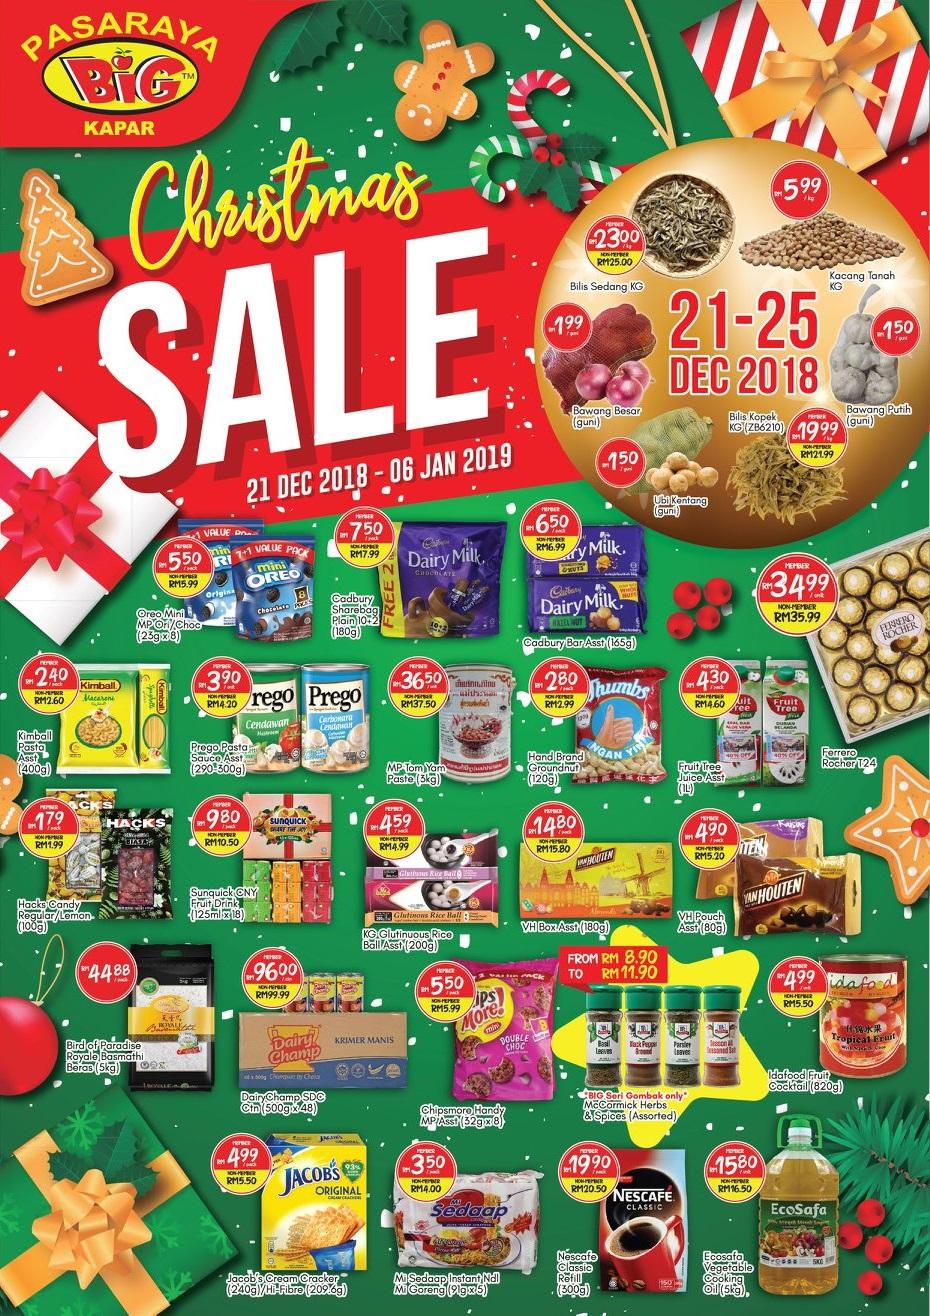 Pasaraya BiG Kapar Christmas Sale Promotion (21 December 2018 - 6 January 2019)